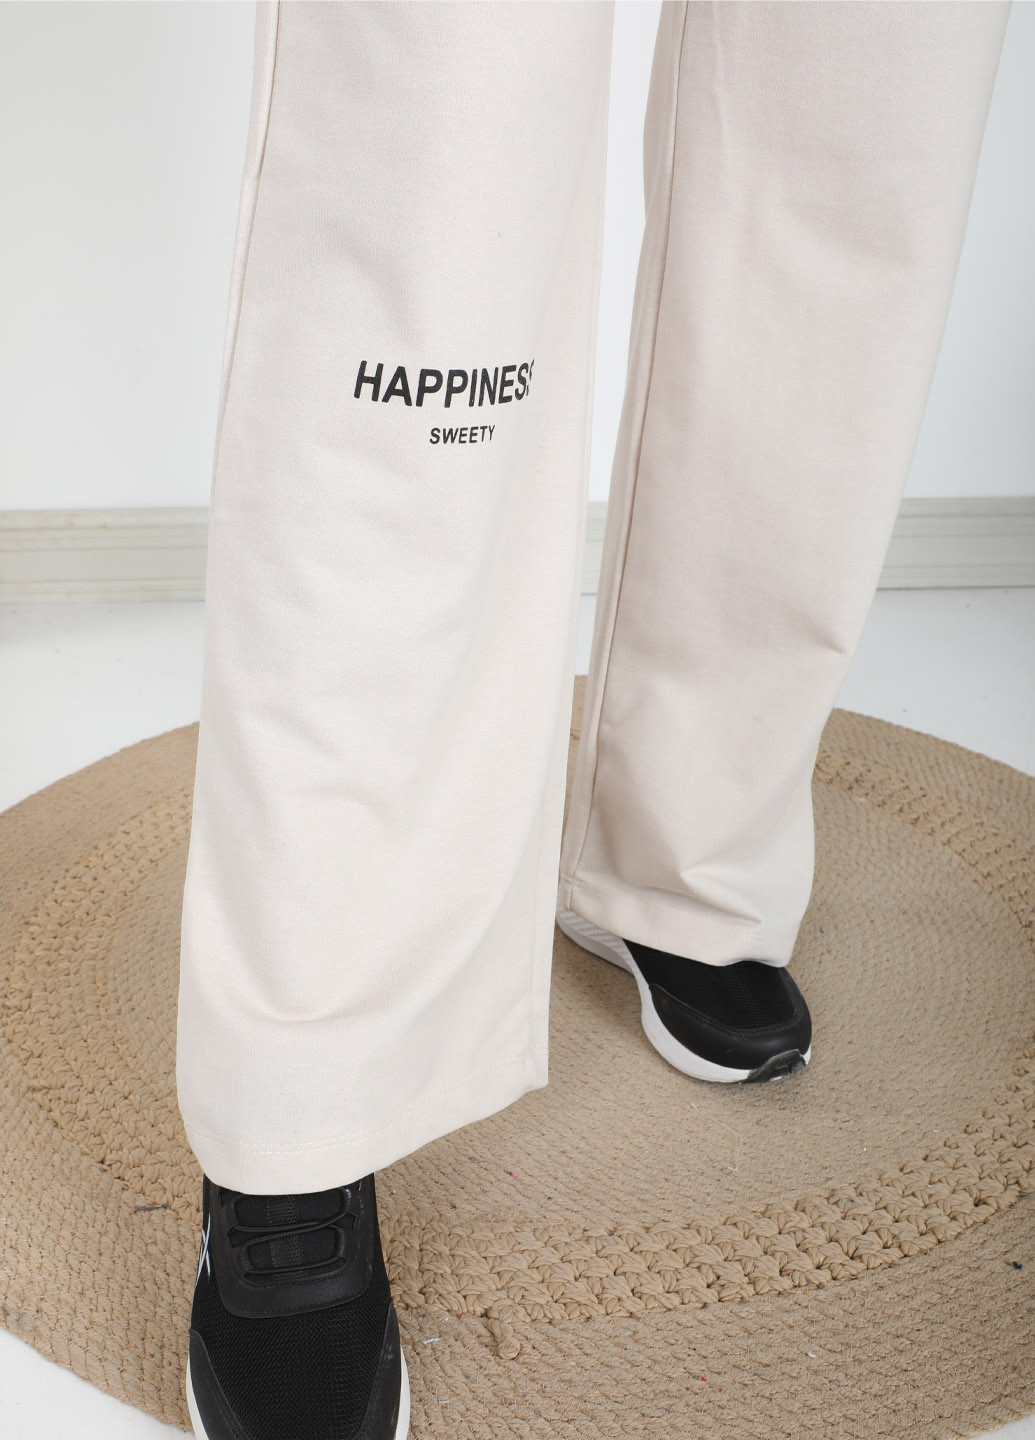 Спортивные брюки женские палаццо трикотажные Pogi (259609525)